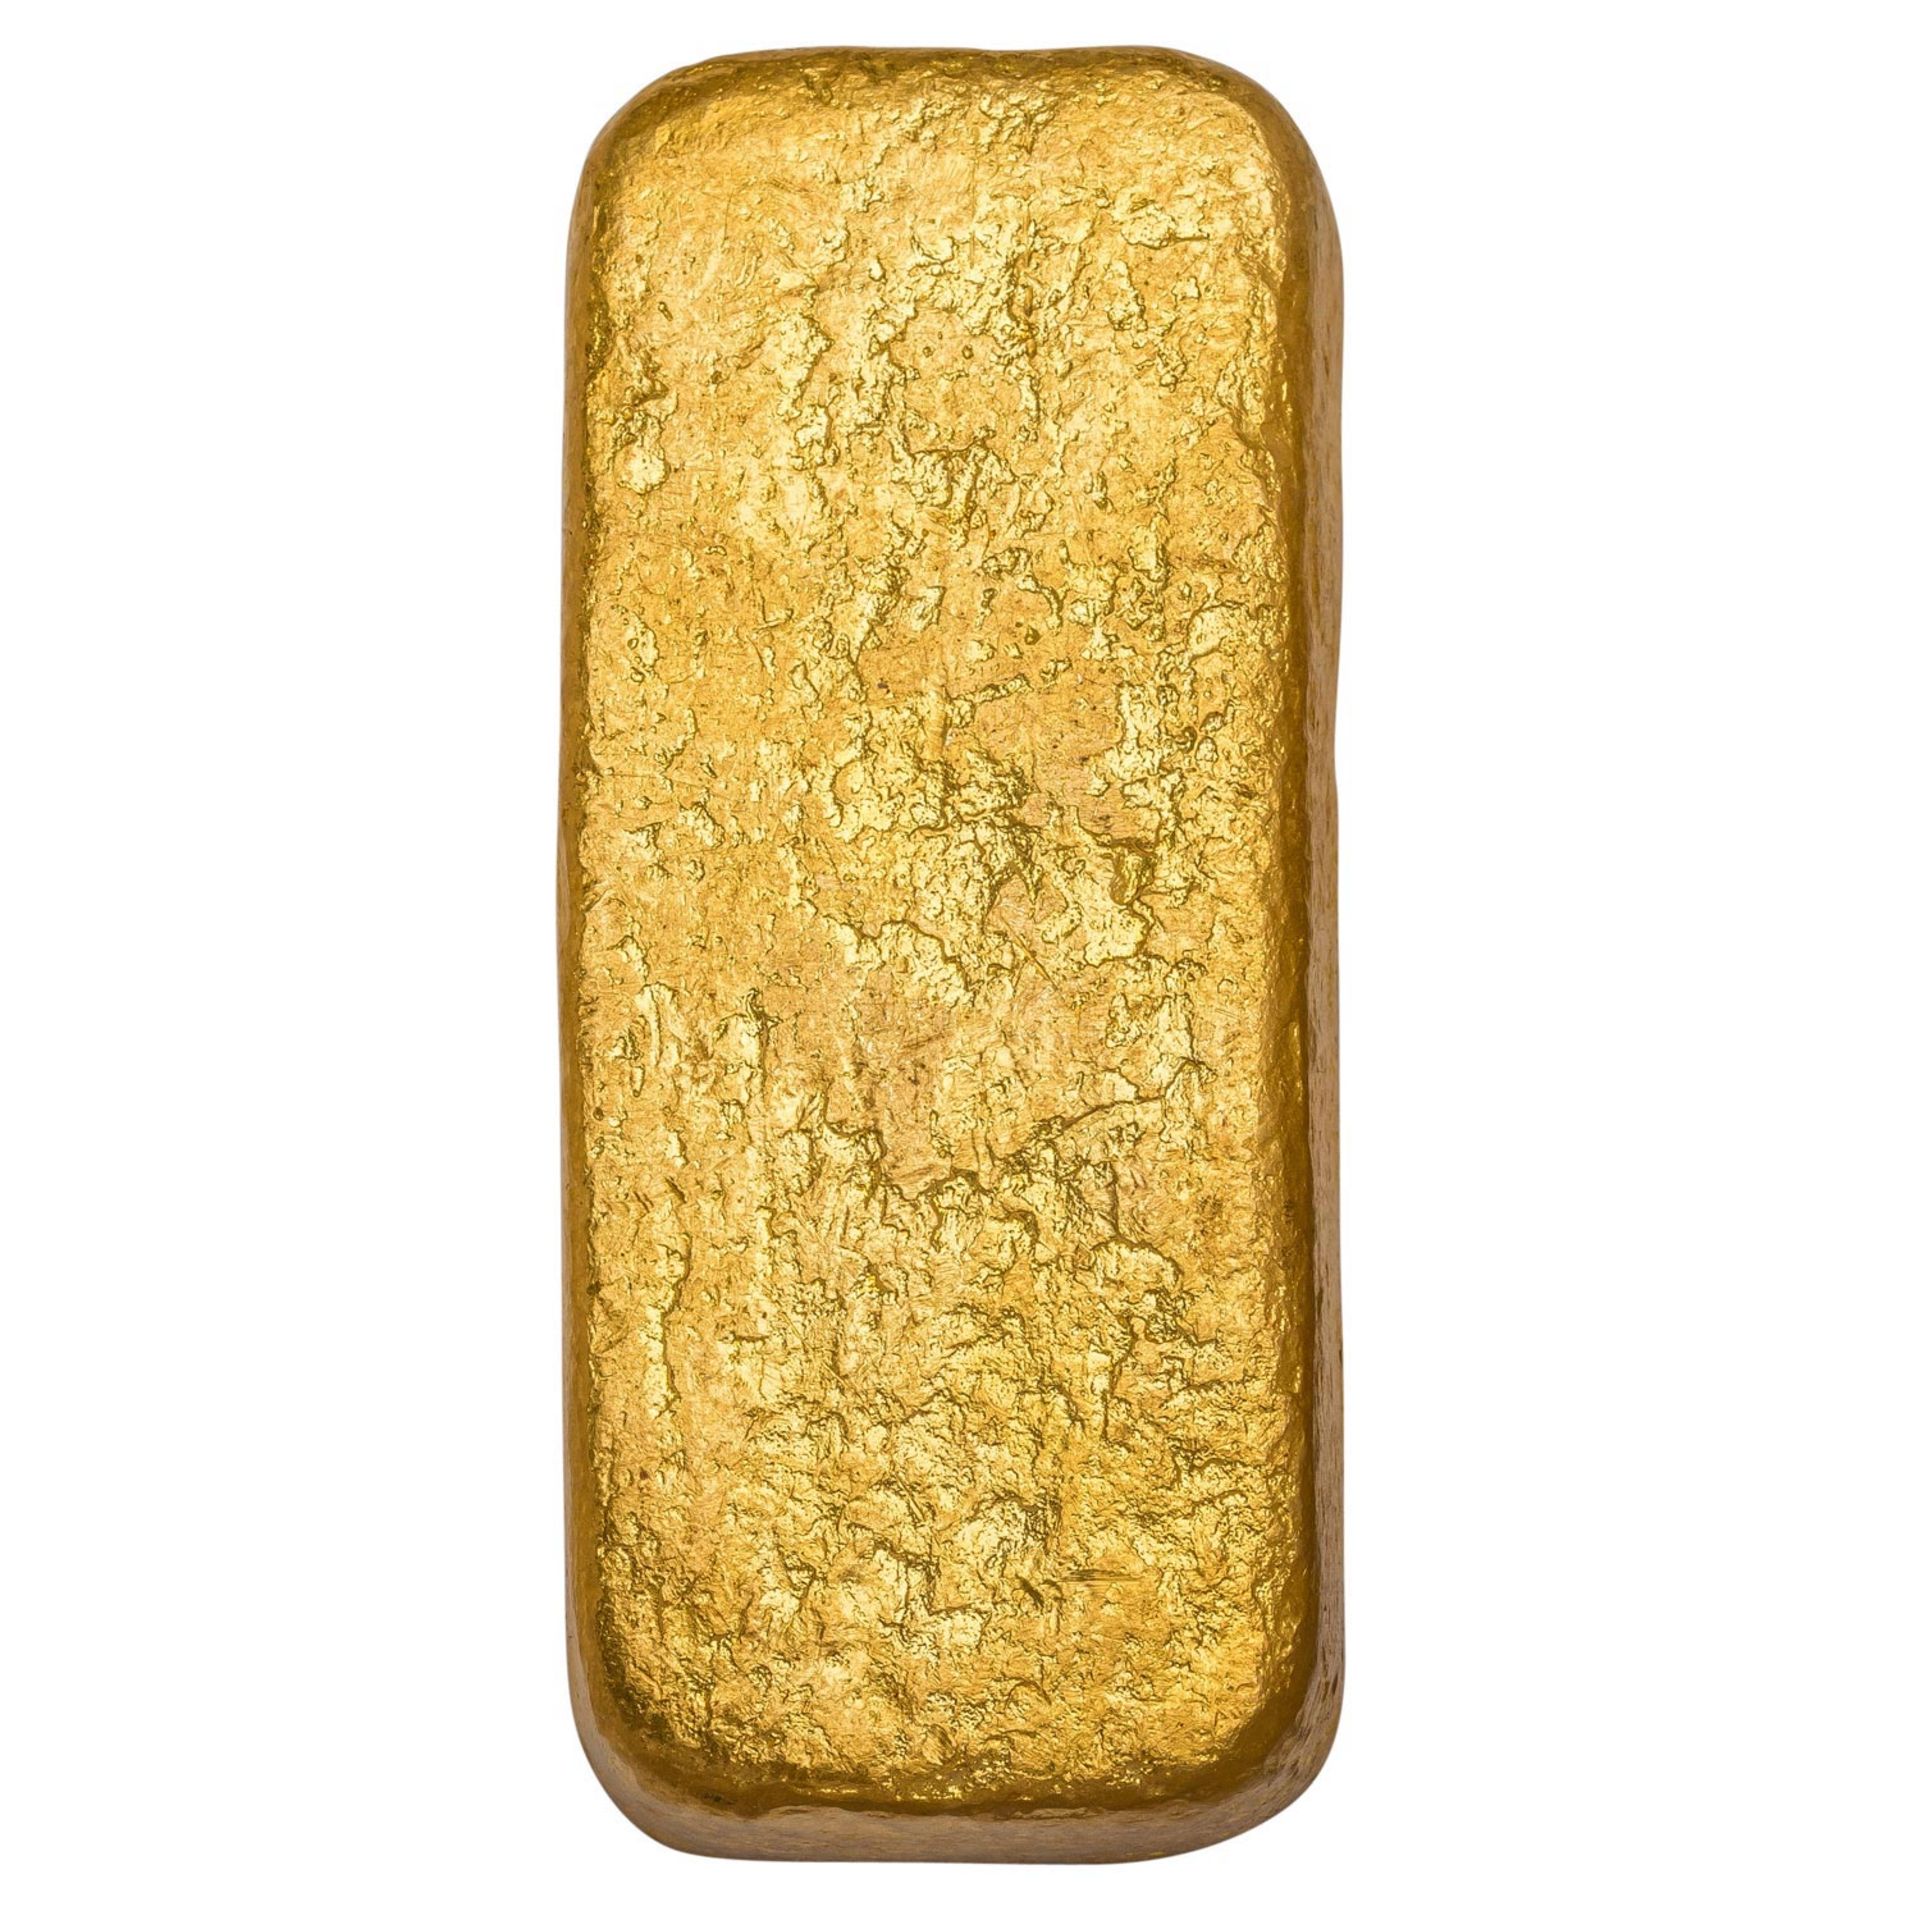 Historischer GOLDbarren aus Frankreich - ca. 994.9 Gramm oder 35.09 Unzen Gold fein, 995.9er Legieru - Image 4 of 6